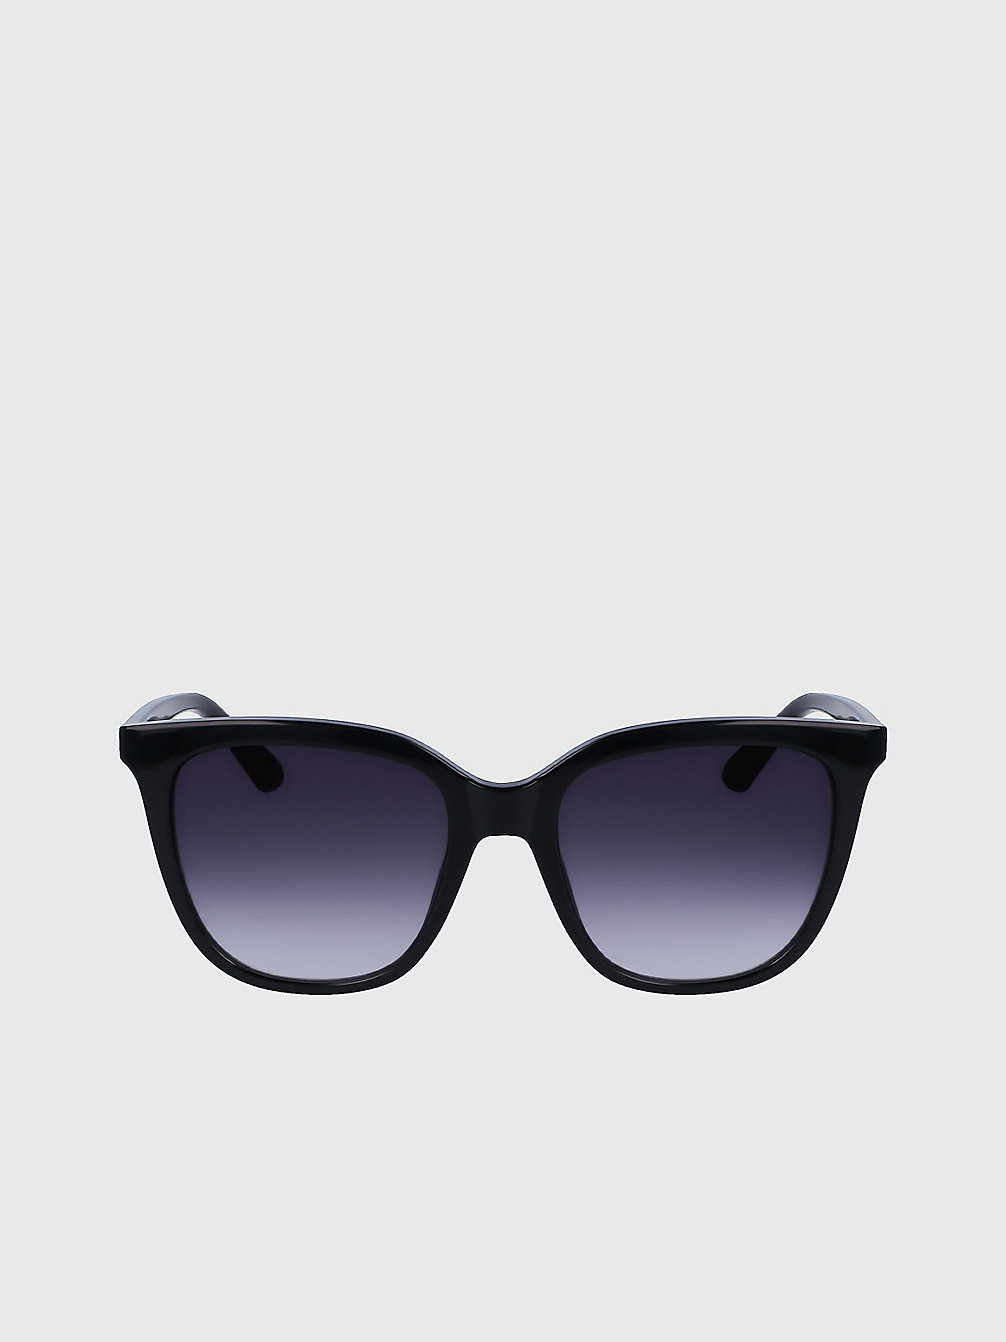 SLATE GREY > Rechteckige Sonnenbrille Ck23506s > undefined Damen - Calvin Klein